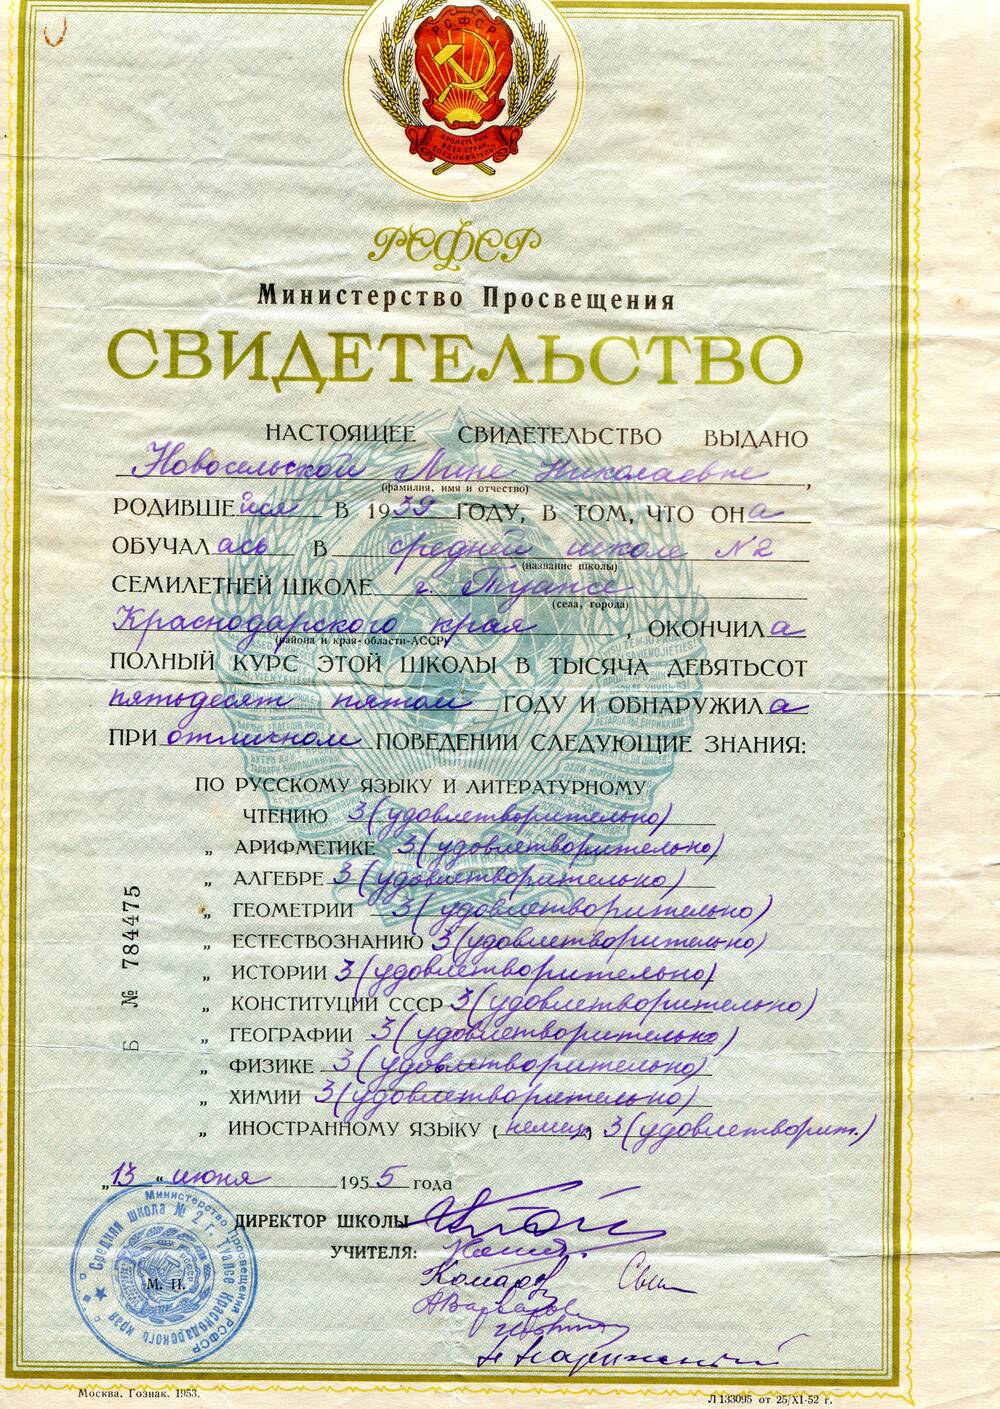 Свидетельство Б № 784475 выдано Новосельской Лине НИколаевне, родившейся в 1939 году, об окончании средней школы № 2 г. Туапсе Краснодарского края